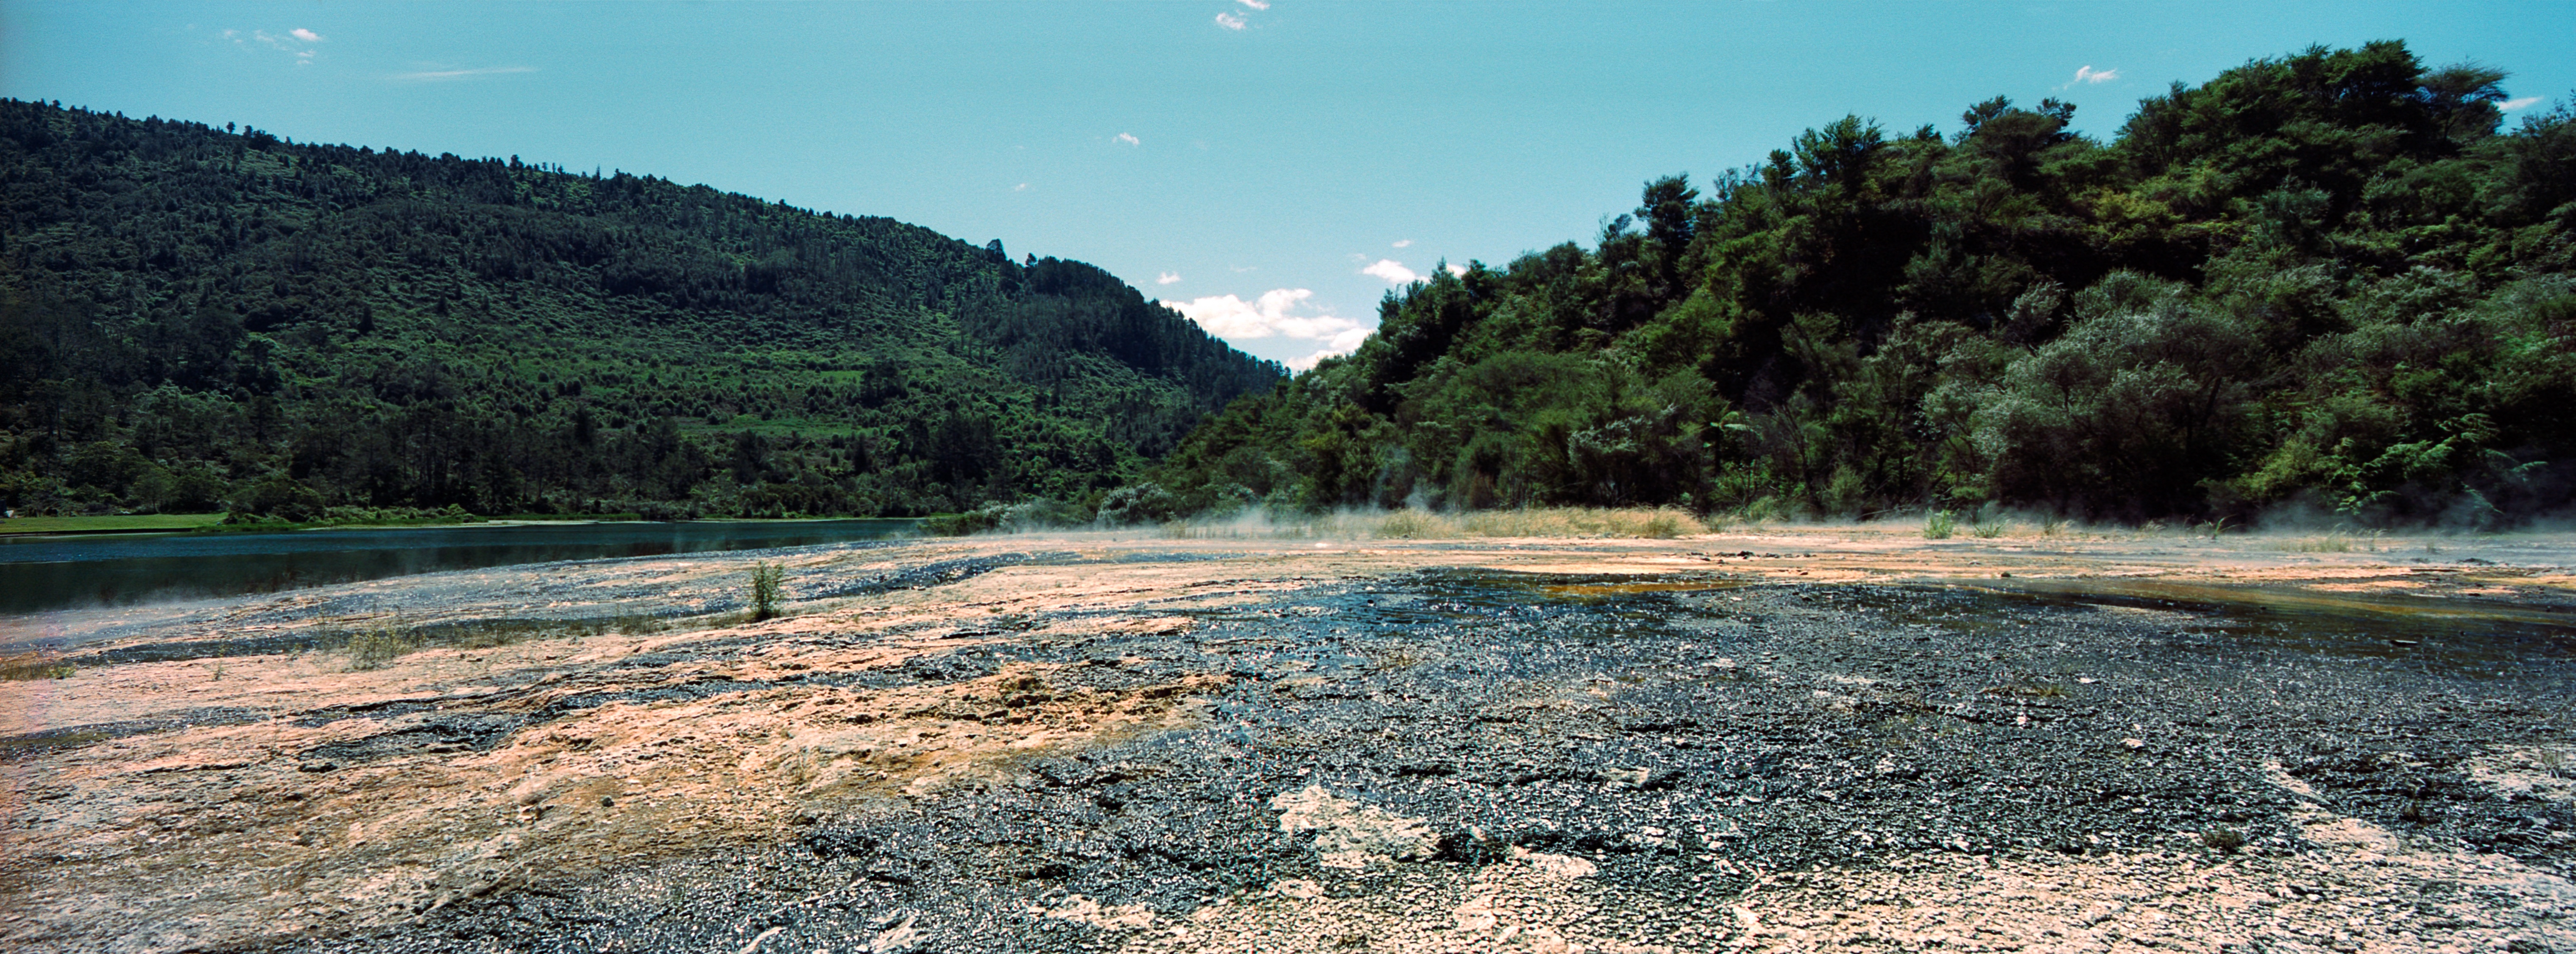 Waimangu Volcanic Valley, Taupo, Waimangu Volcanic Valley